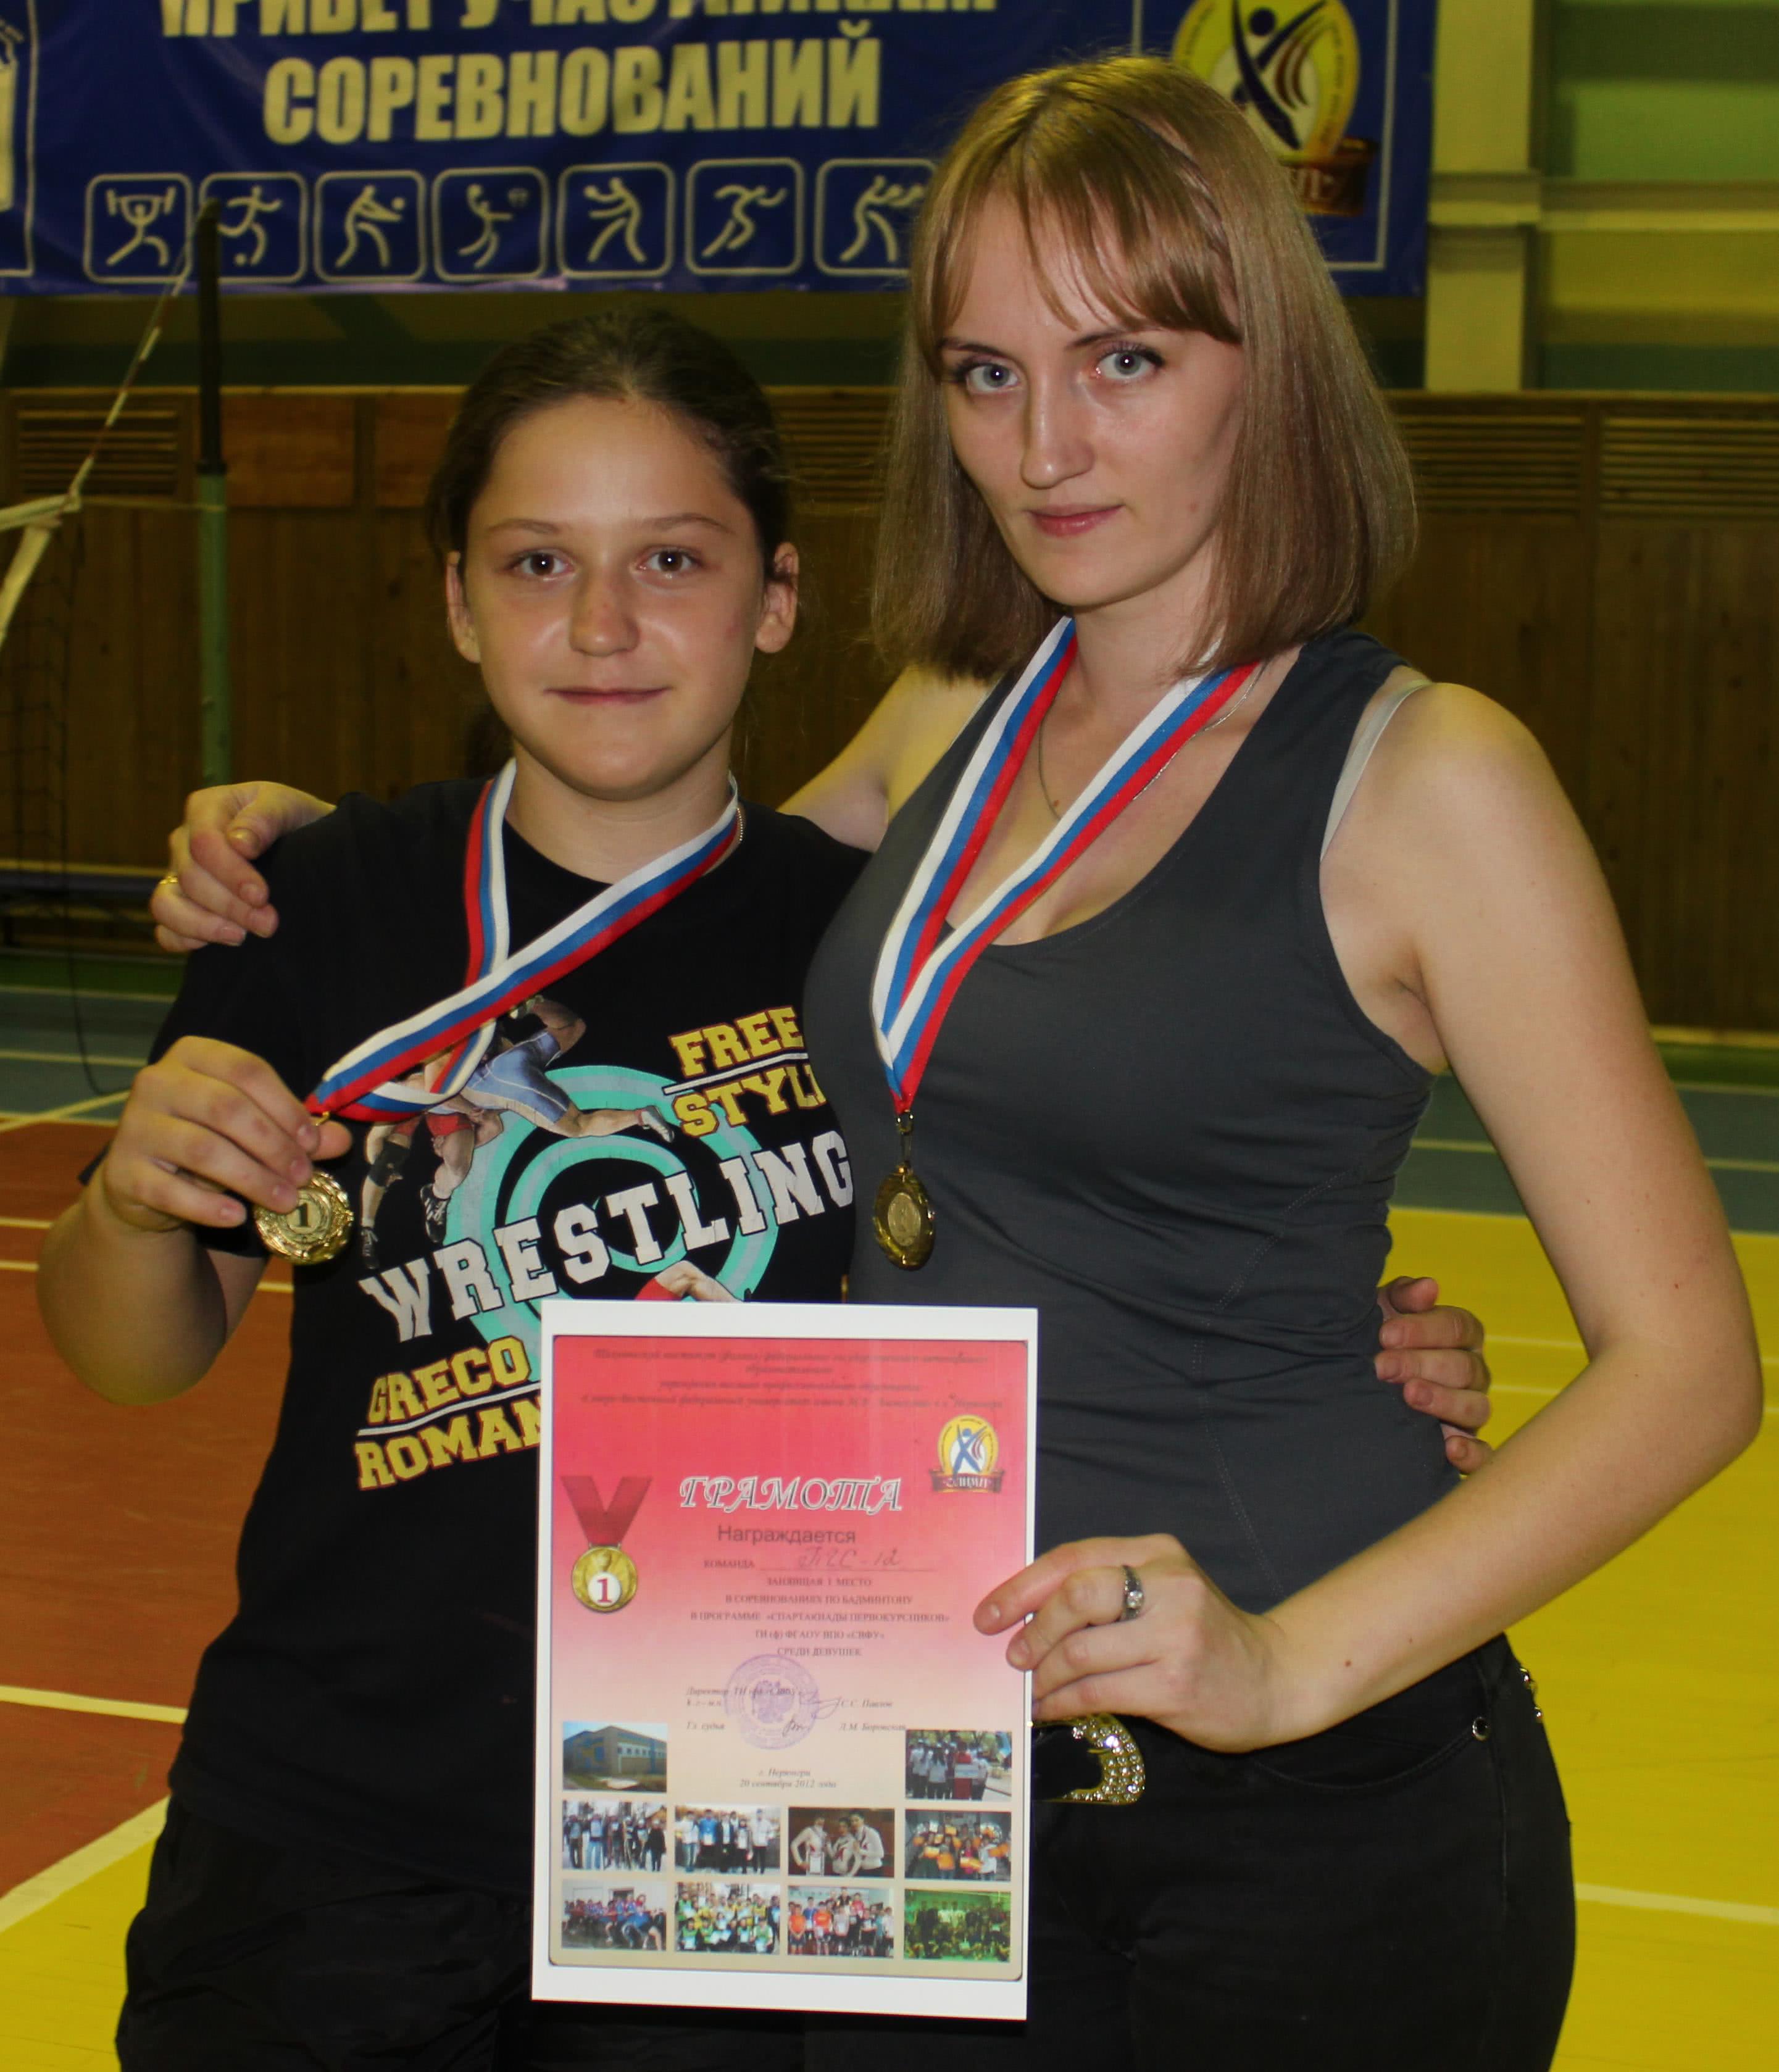 Поздравляем команды девушек, занявшие призовые места в соревнованиях по бадминтону